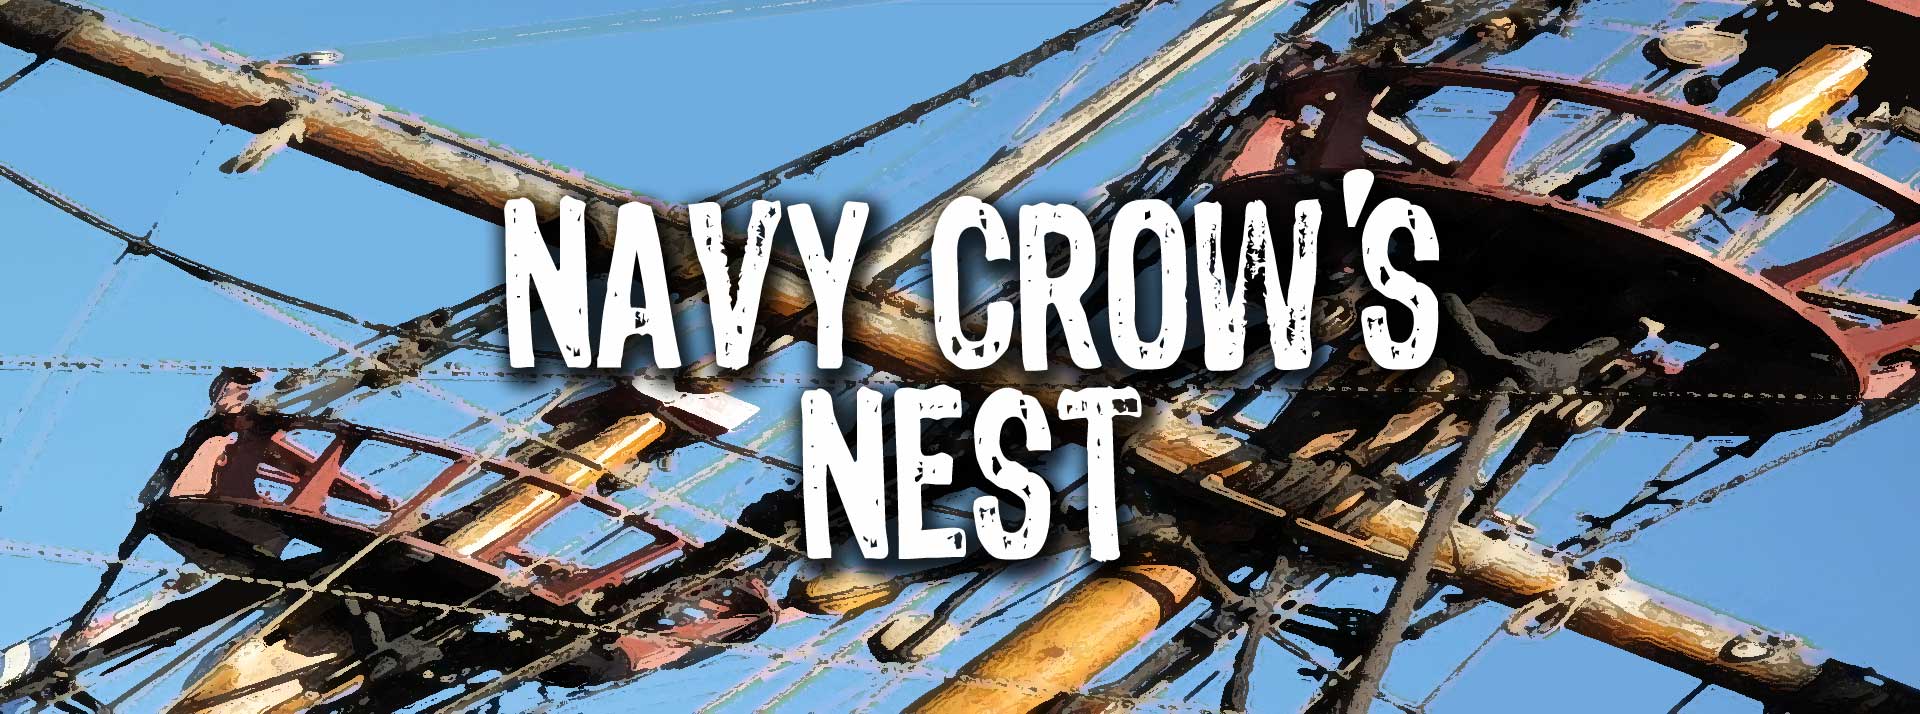 Navy Crow's Nest